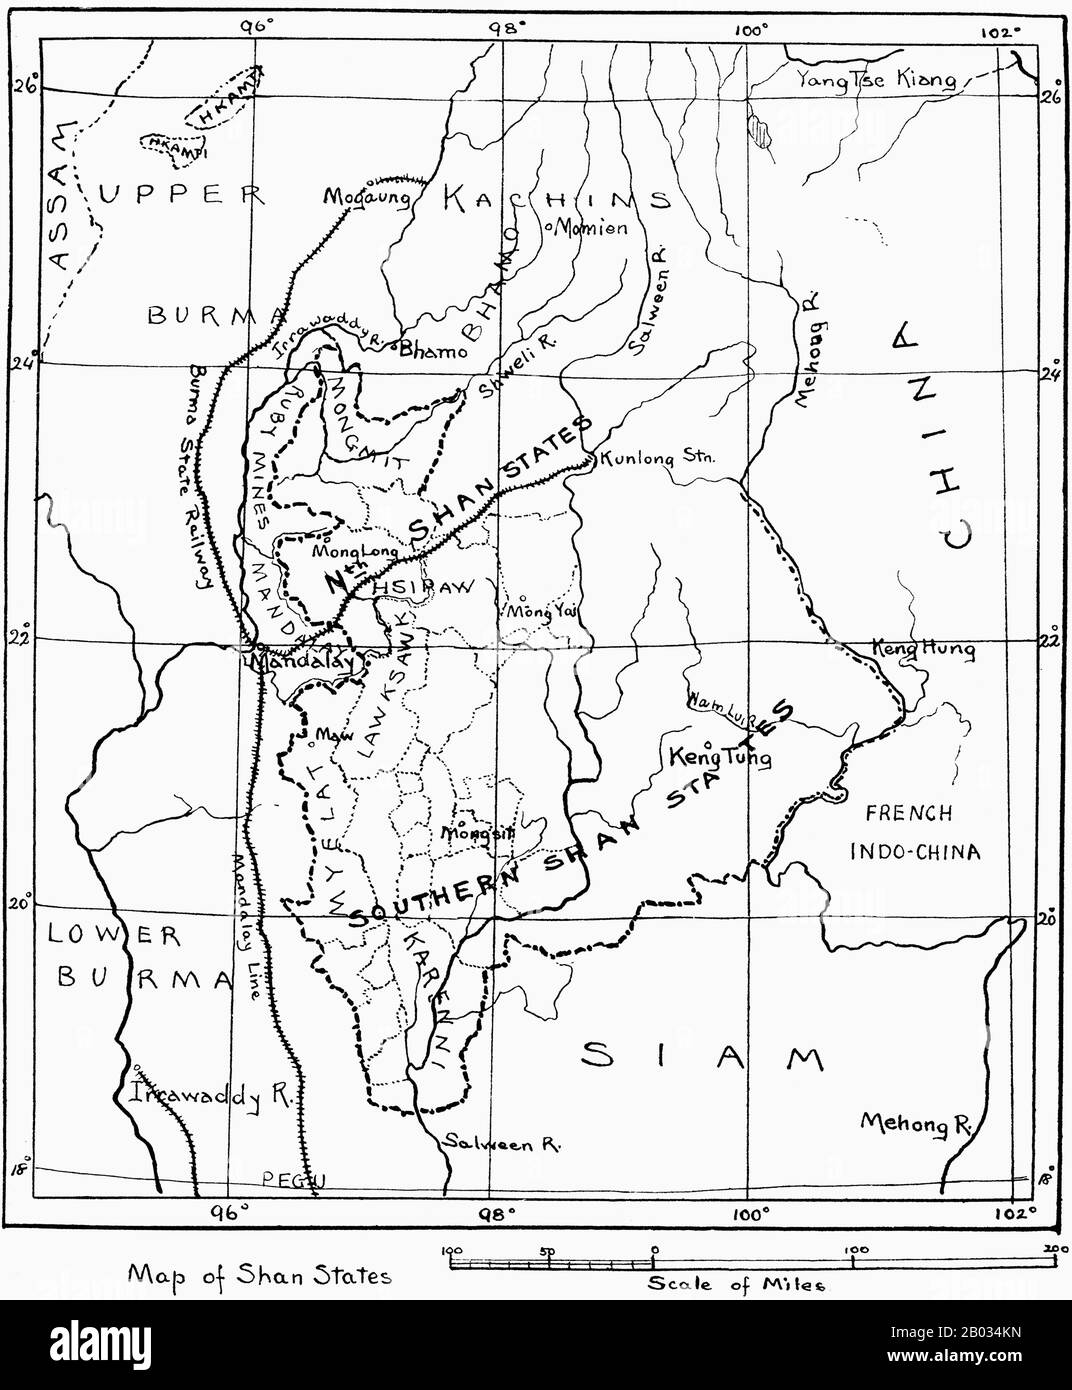 Die Föderierten Shan-Staaten waren die Bezeichnung für eine administrative Aufteilung des britischen Empires, die von den Shan-Staaten und den Karenni-Staaten während der britischen Herrschaft in Birma gebildet wurde. Unter der britischen Kolonialverwaltung bestanden die ehemaligen Fürstenstaaten Shan aus nominell souveränen Einheiten, die jeweils von einem lokalen Monarchen regiert wurden, aber von einem einzigen britischen kommissar verwaltet wurden. Am 10. Oktober 1922 wurden die Verwaltungen der Karenni-Staaten und der Shan-Staaten offiziell zusammengeführt, um die Föderierten Shan-Staaten unter einem britischen kommissar zu gründen, der auch die Wa S verwaltete Stockfoto